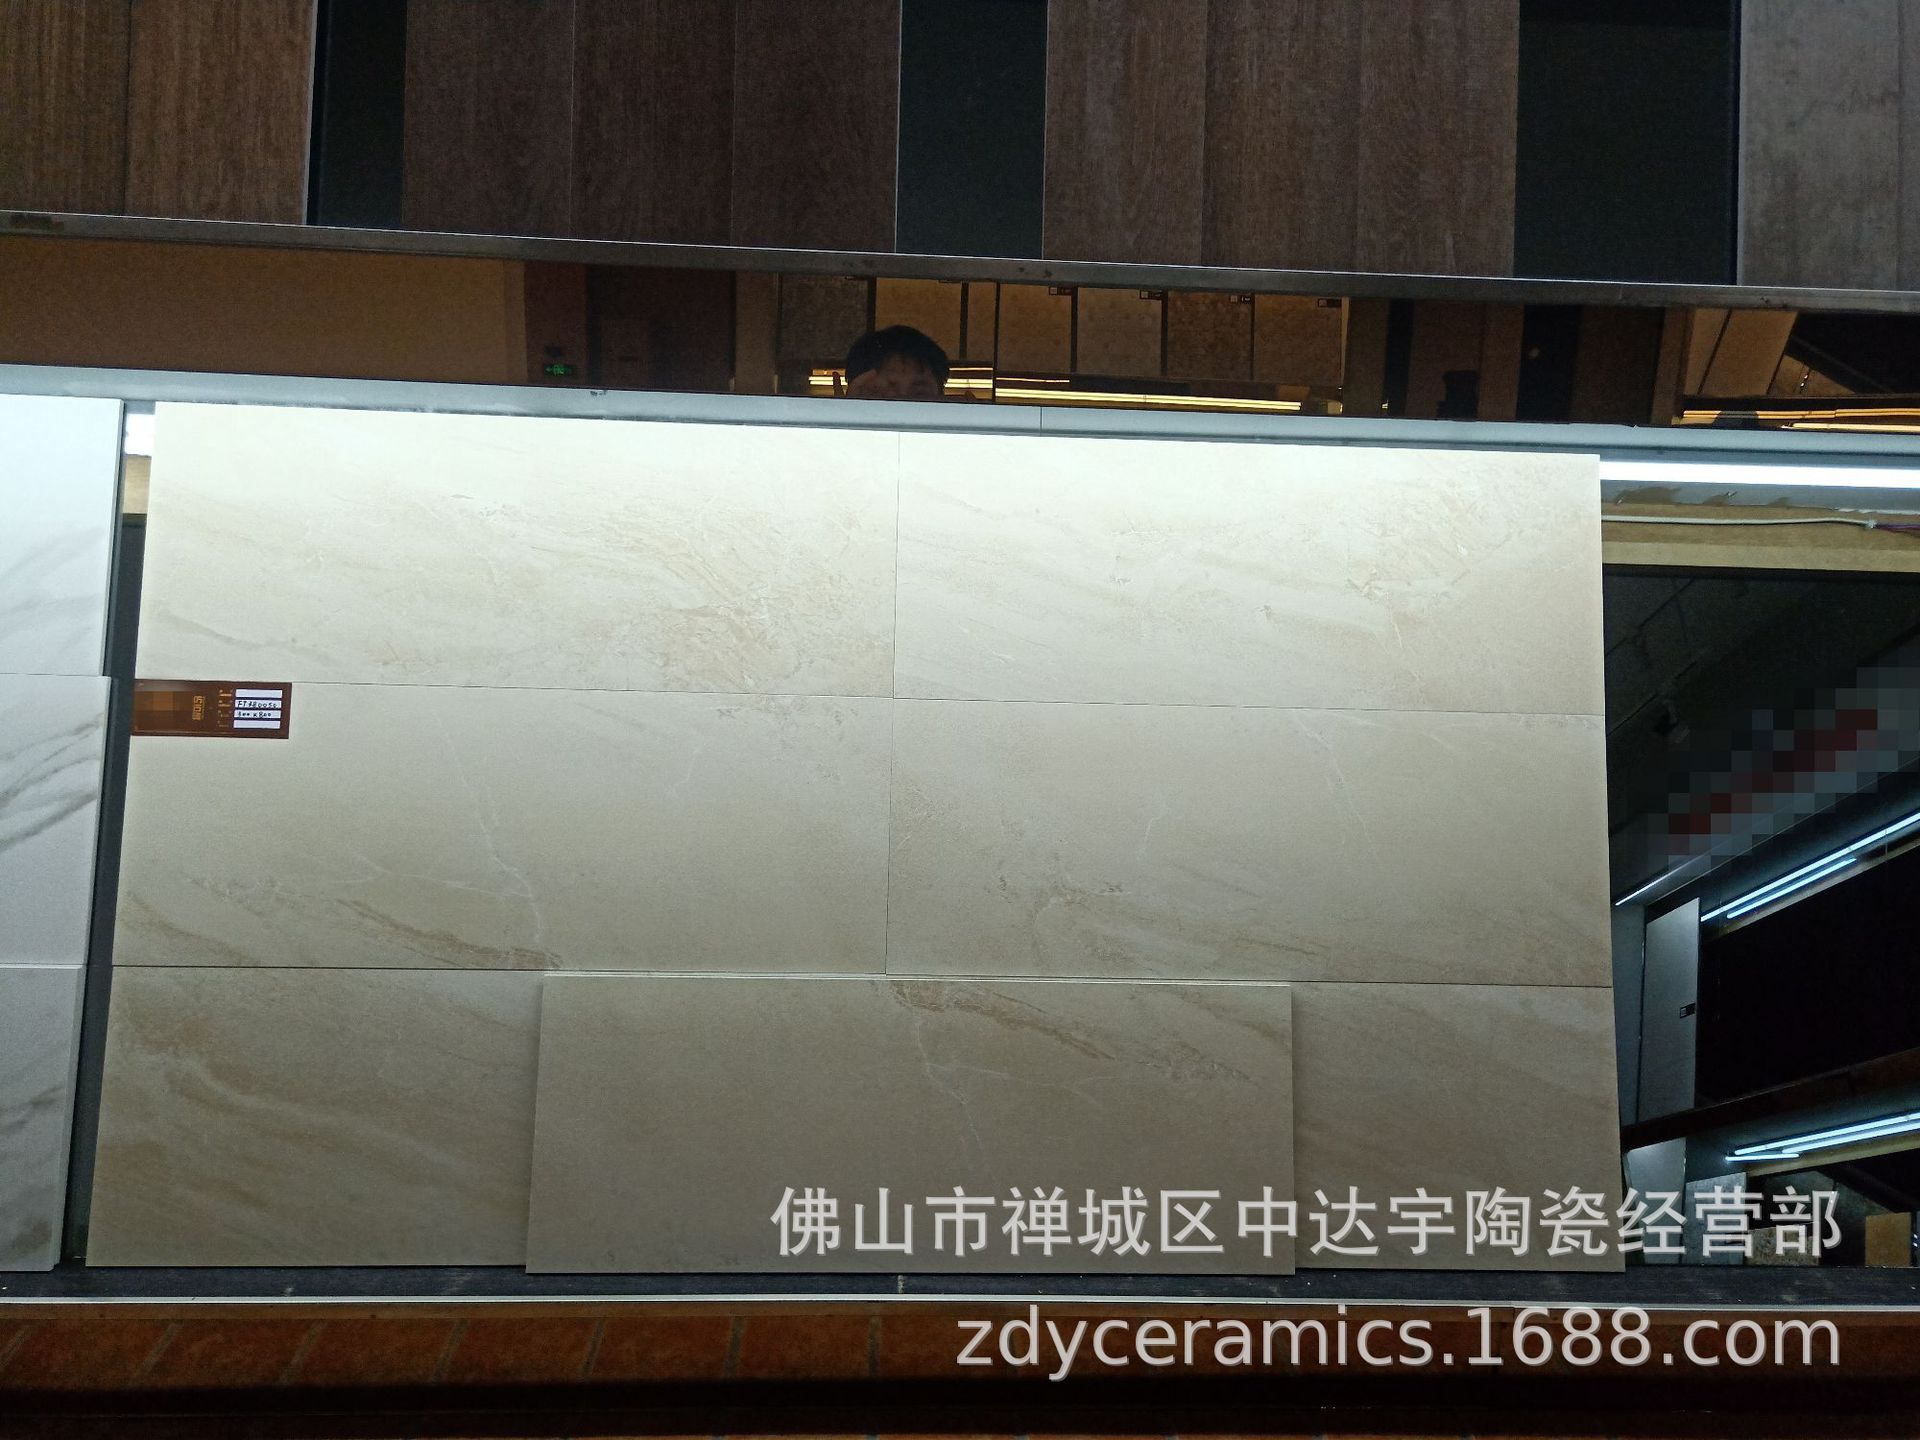 佛山新系列300X900mm 仿古瓷砖防滑防潮客厅厨房浴室墙面砖地面砖JXHD390示例图8